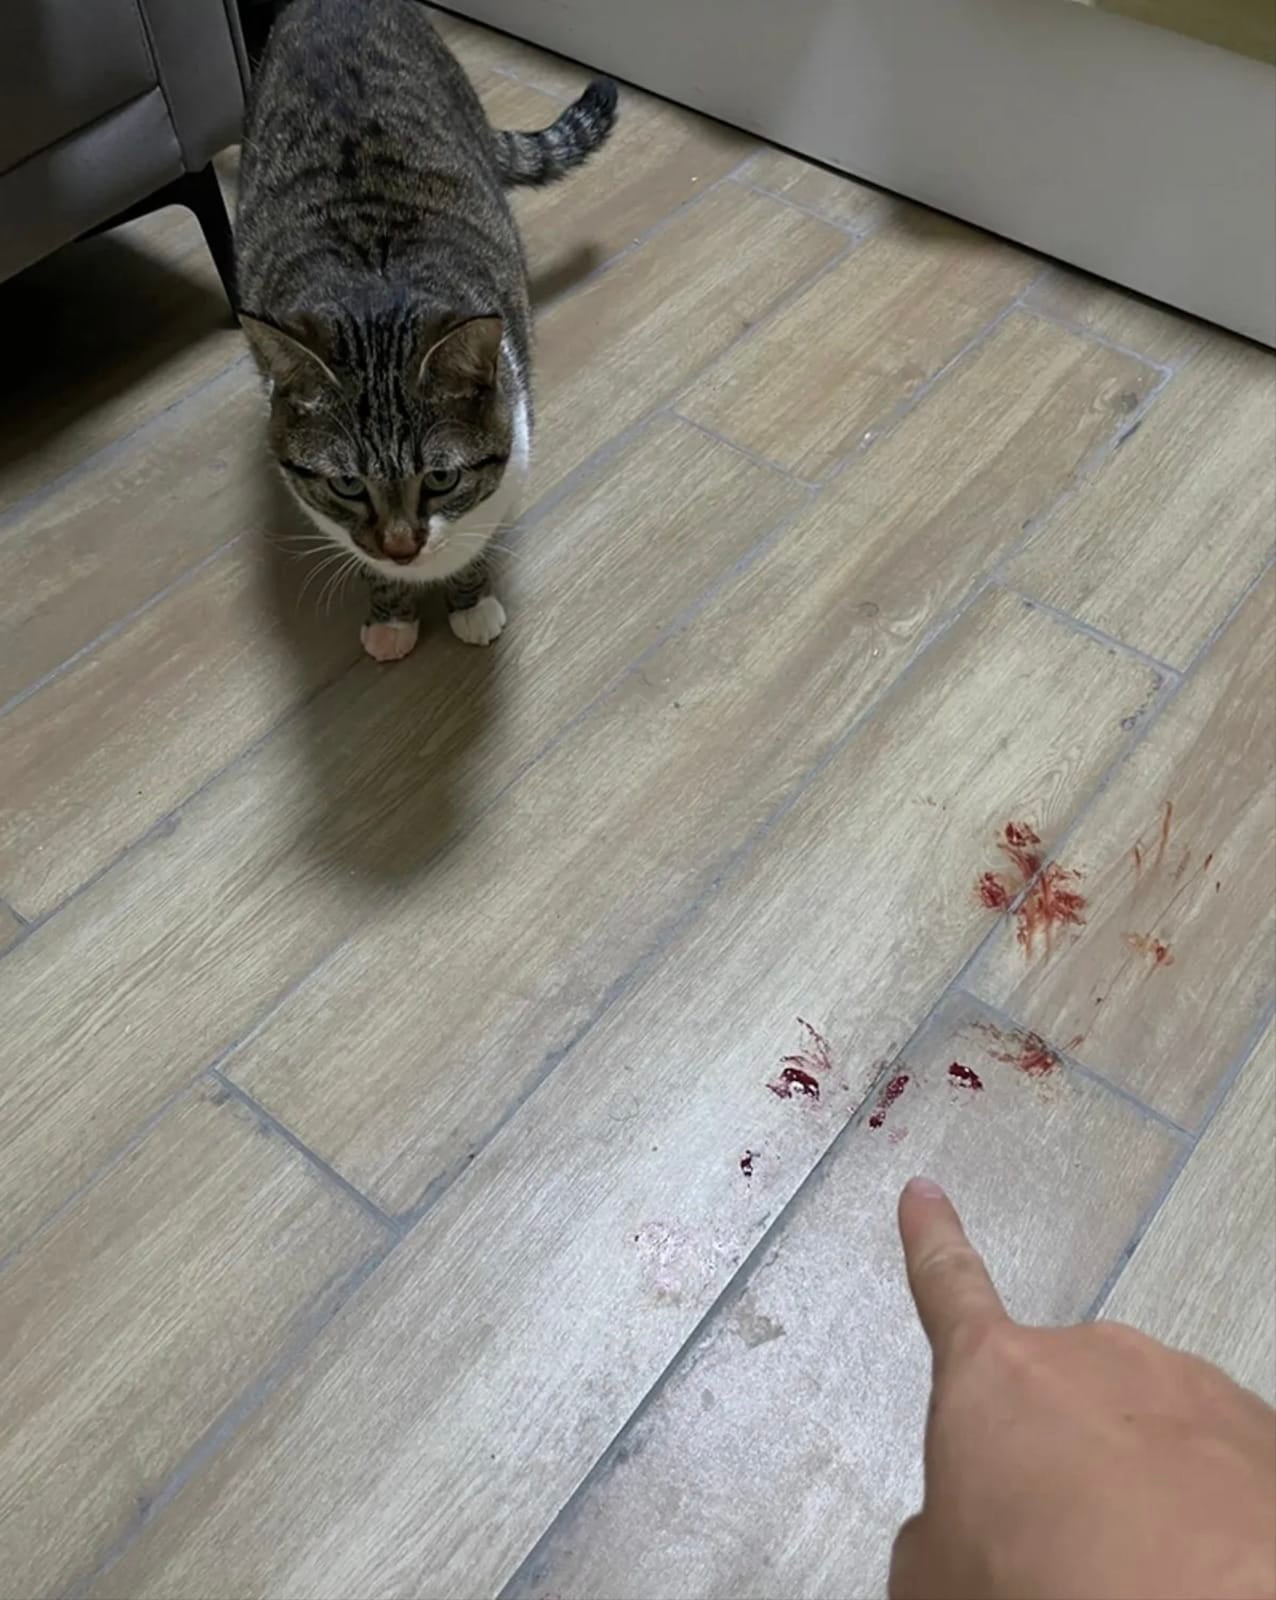 แมวเหยียบแคปซูลสีแดง เหมือนรอยเลือดบนพื้นห้อง